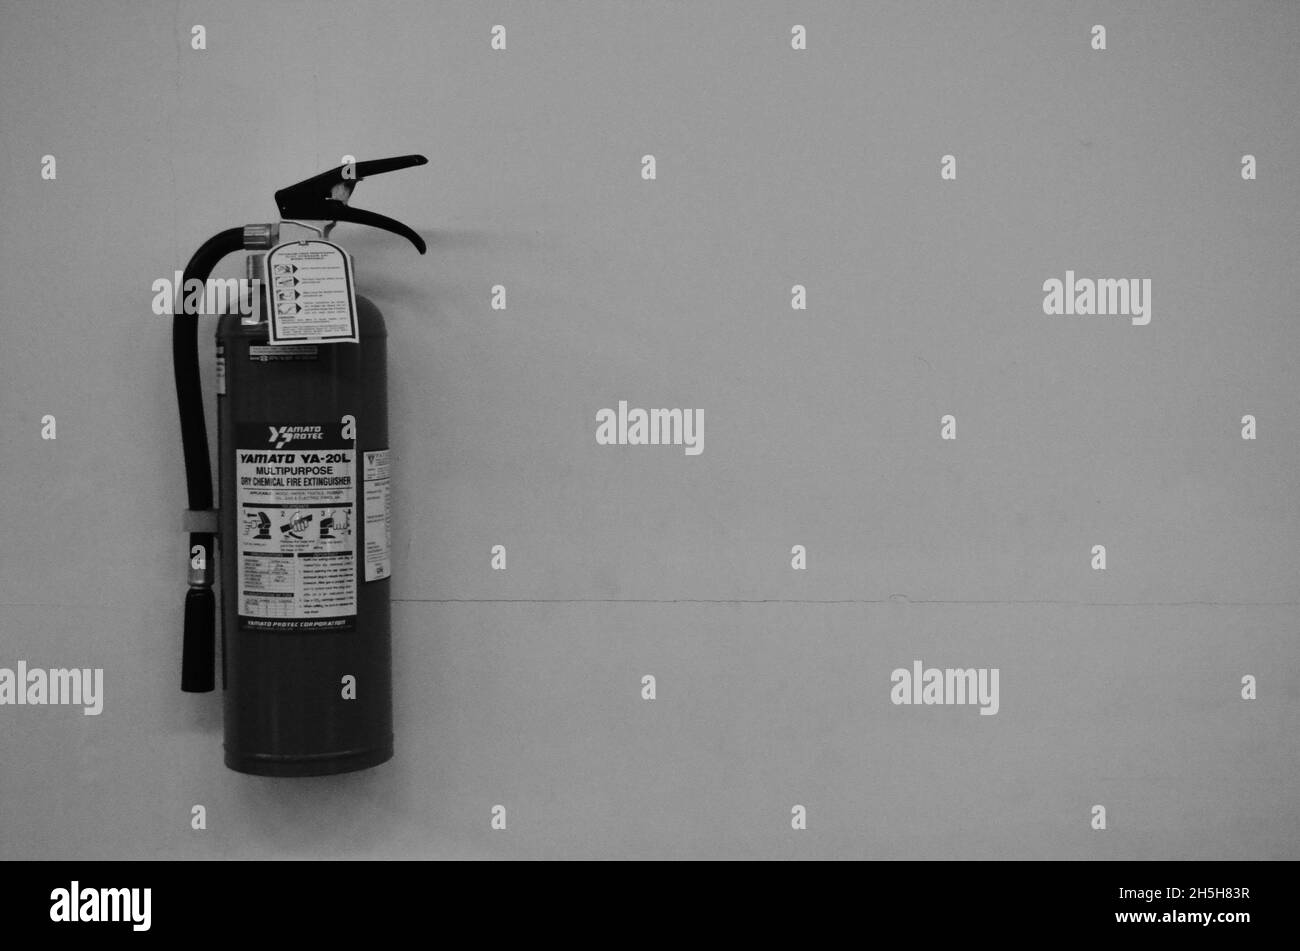 Notfeuerlöscher Stockfotos und -bilder Kaufen - Alamy